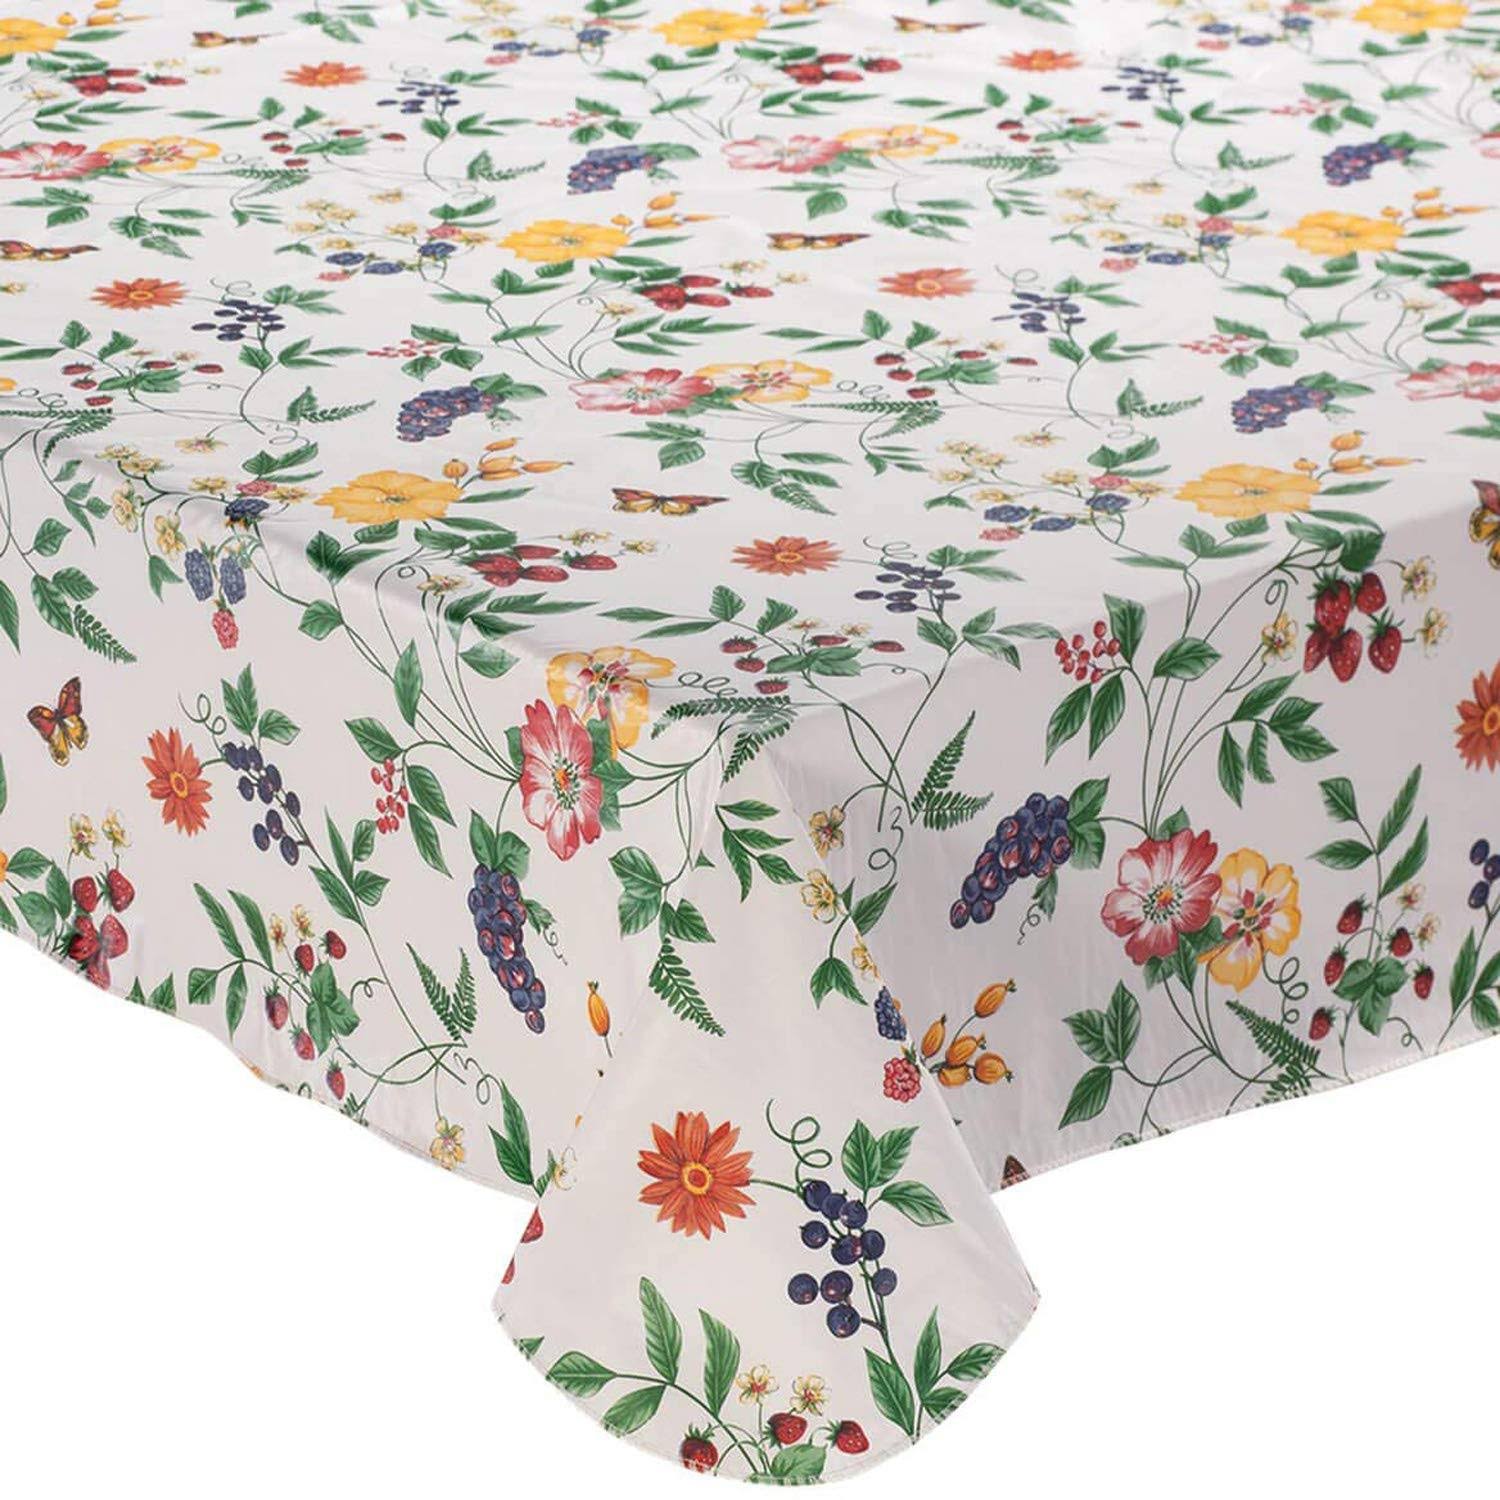 Lintex Floral Vinyl Tablecloth 52"X70"